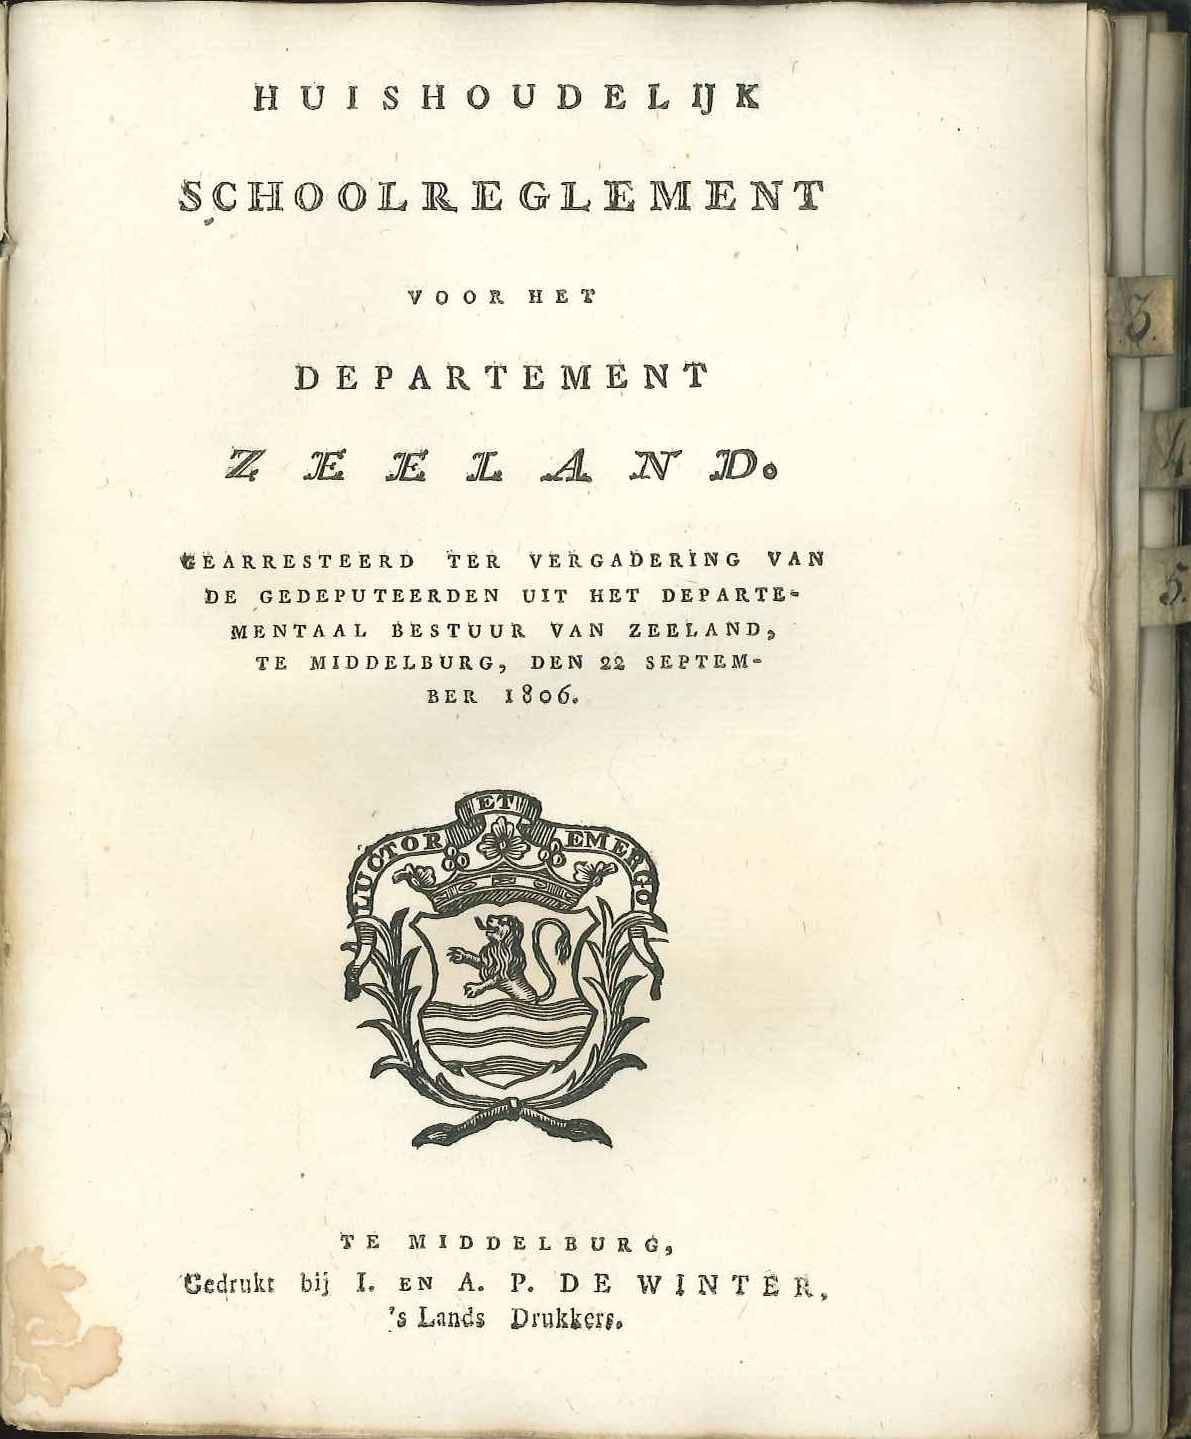 Huishoudelijk schoolreglement voor Zeeland. 1806.